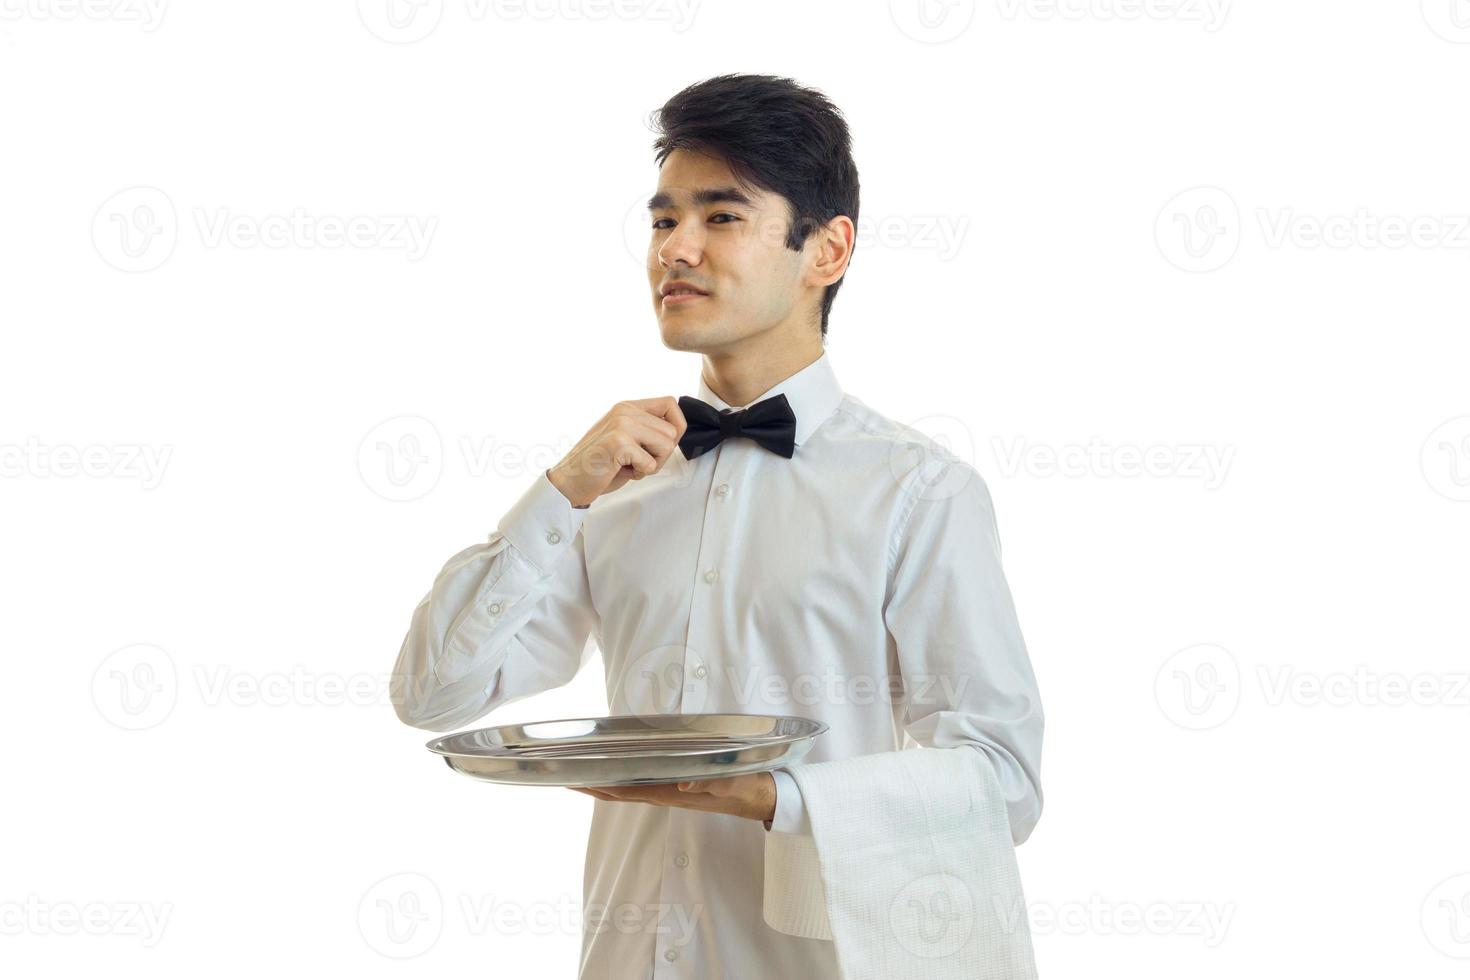 guapo camarero en uniforme con pajarita y bandeja de plata en la mano mirando a un lado foto